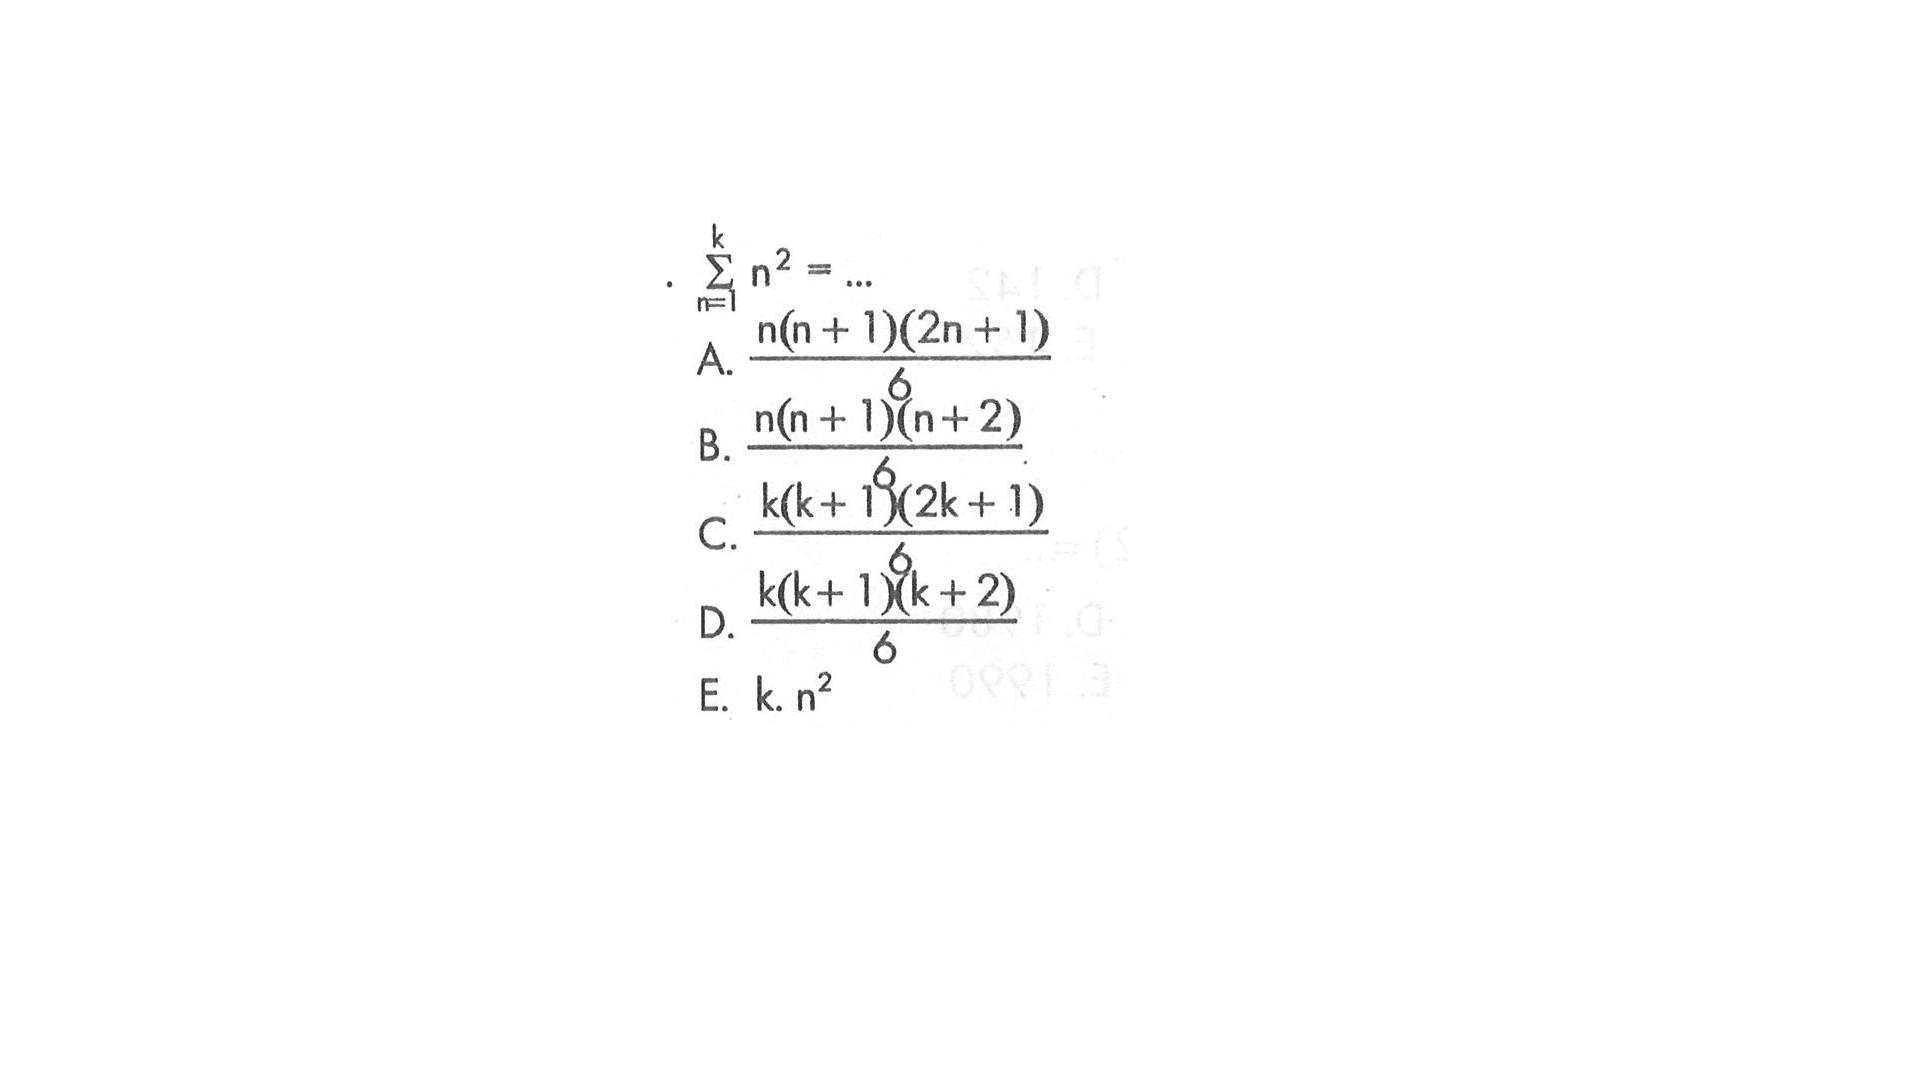 sigma n=1 k (n^2)=